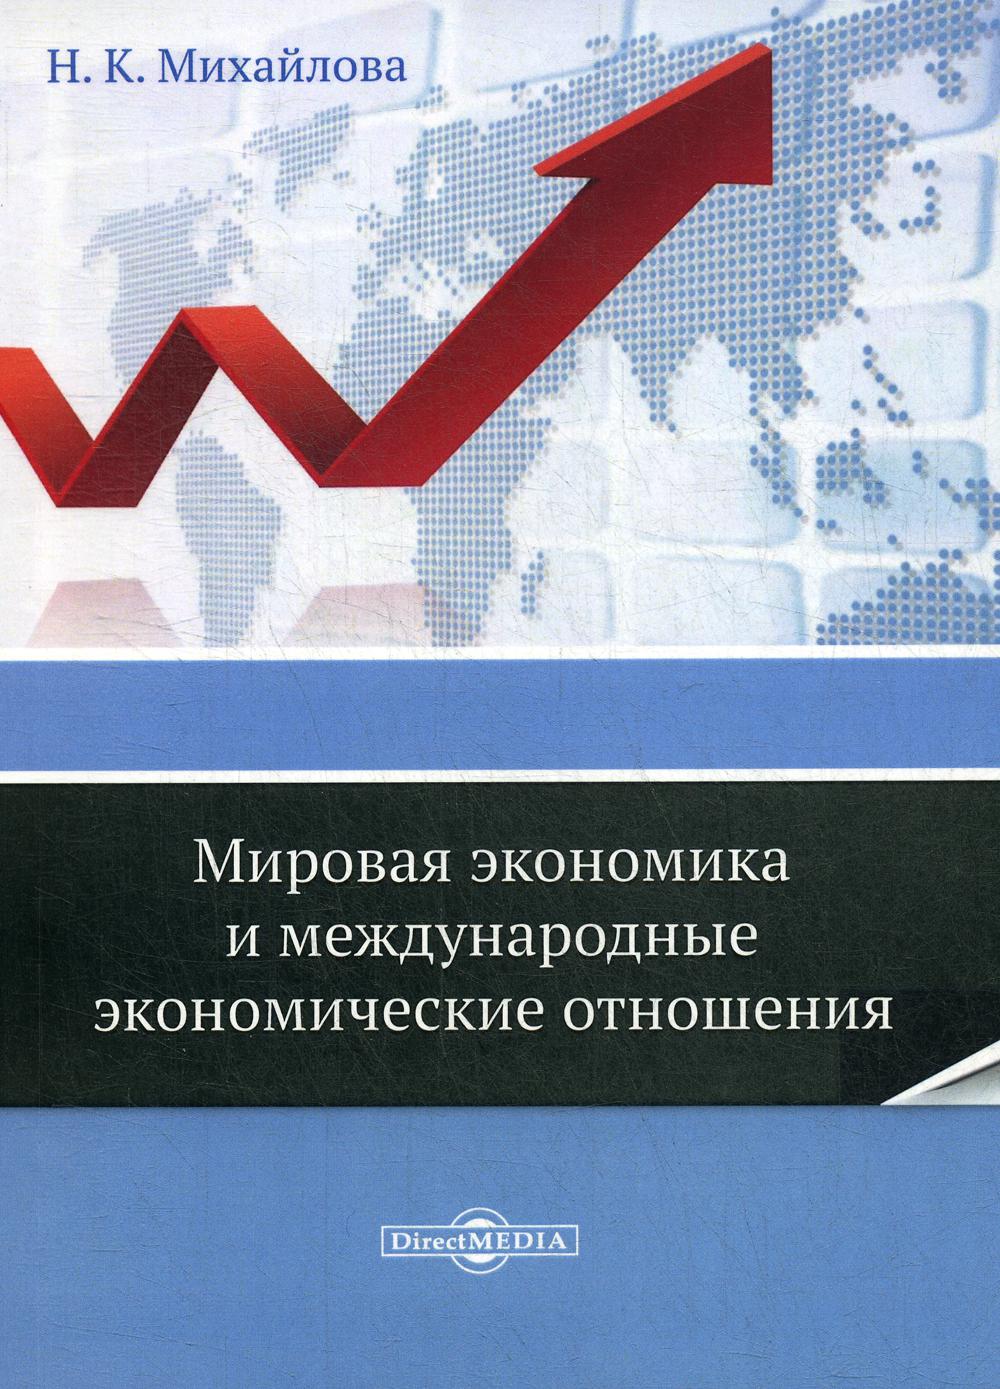 фото Книга мировая экономика и международные экономические отношения директмедиа